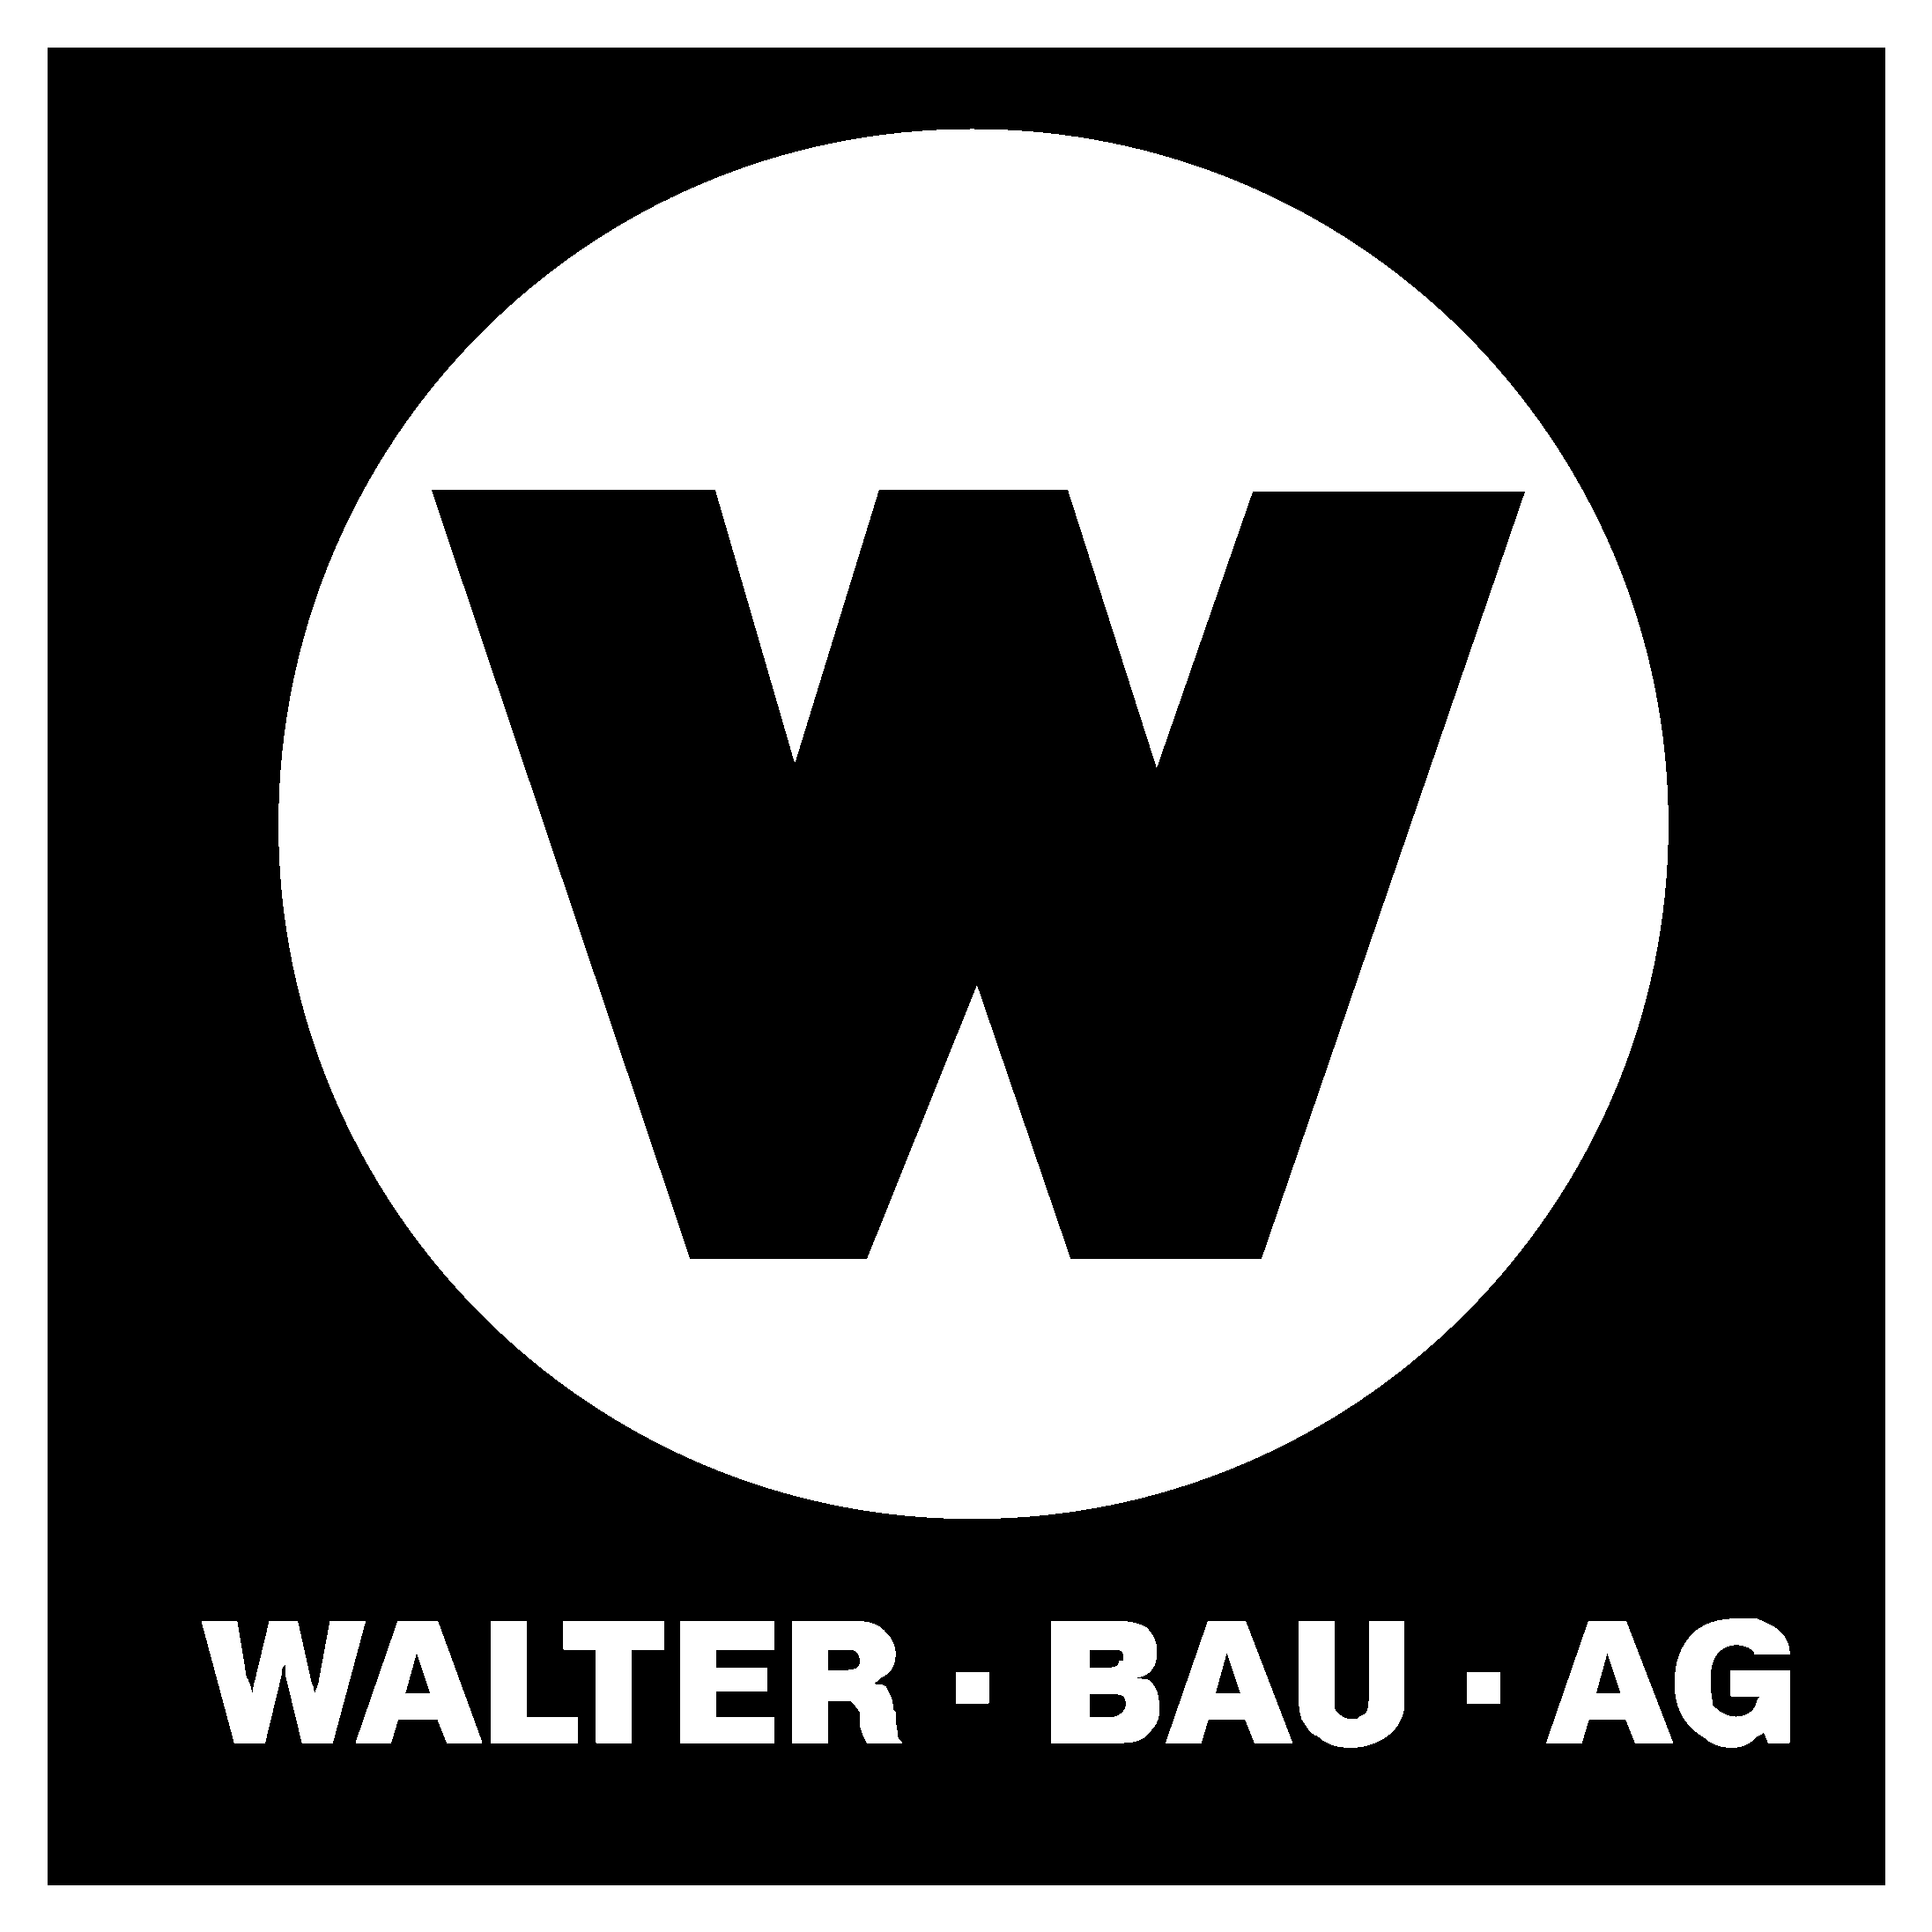 Walter Bau Ag Logo Black And White - Emblem (2400x2400), Png Download